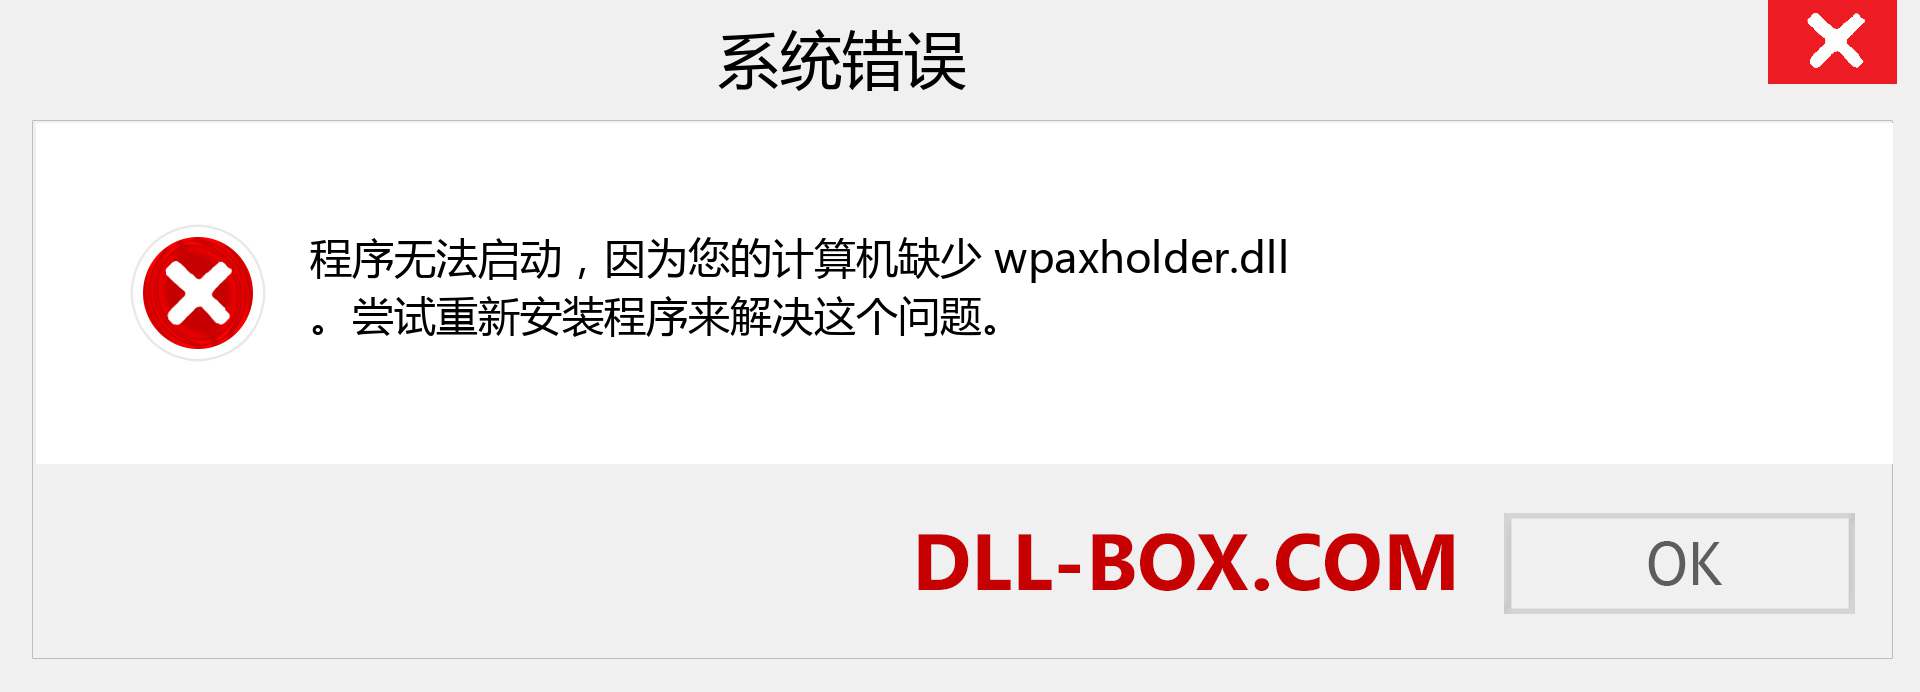 wpaxholder.dll 文件丢失？。 适用于 Windows 7、8、10 的下载 - 修复 Windows、照片、图像上的 wpaxholder dll 丢失错误